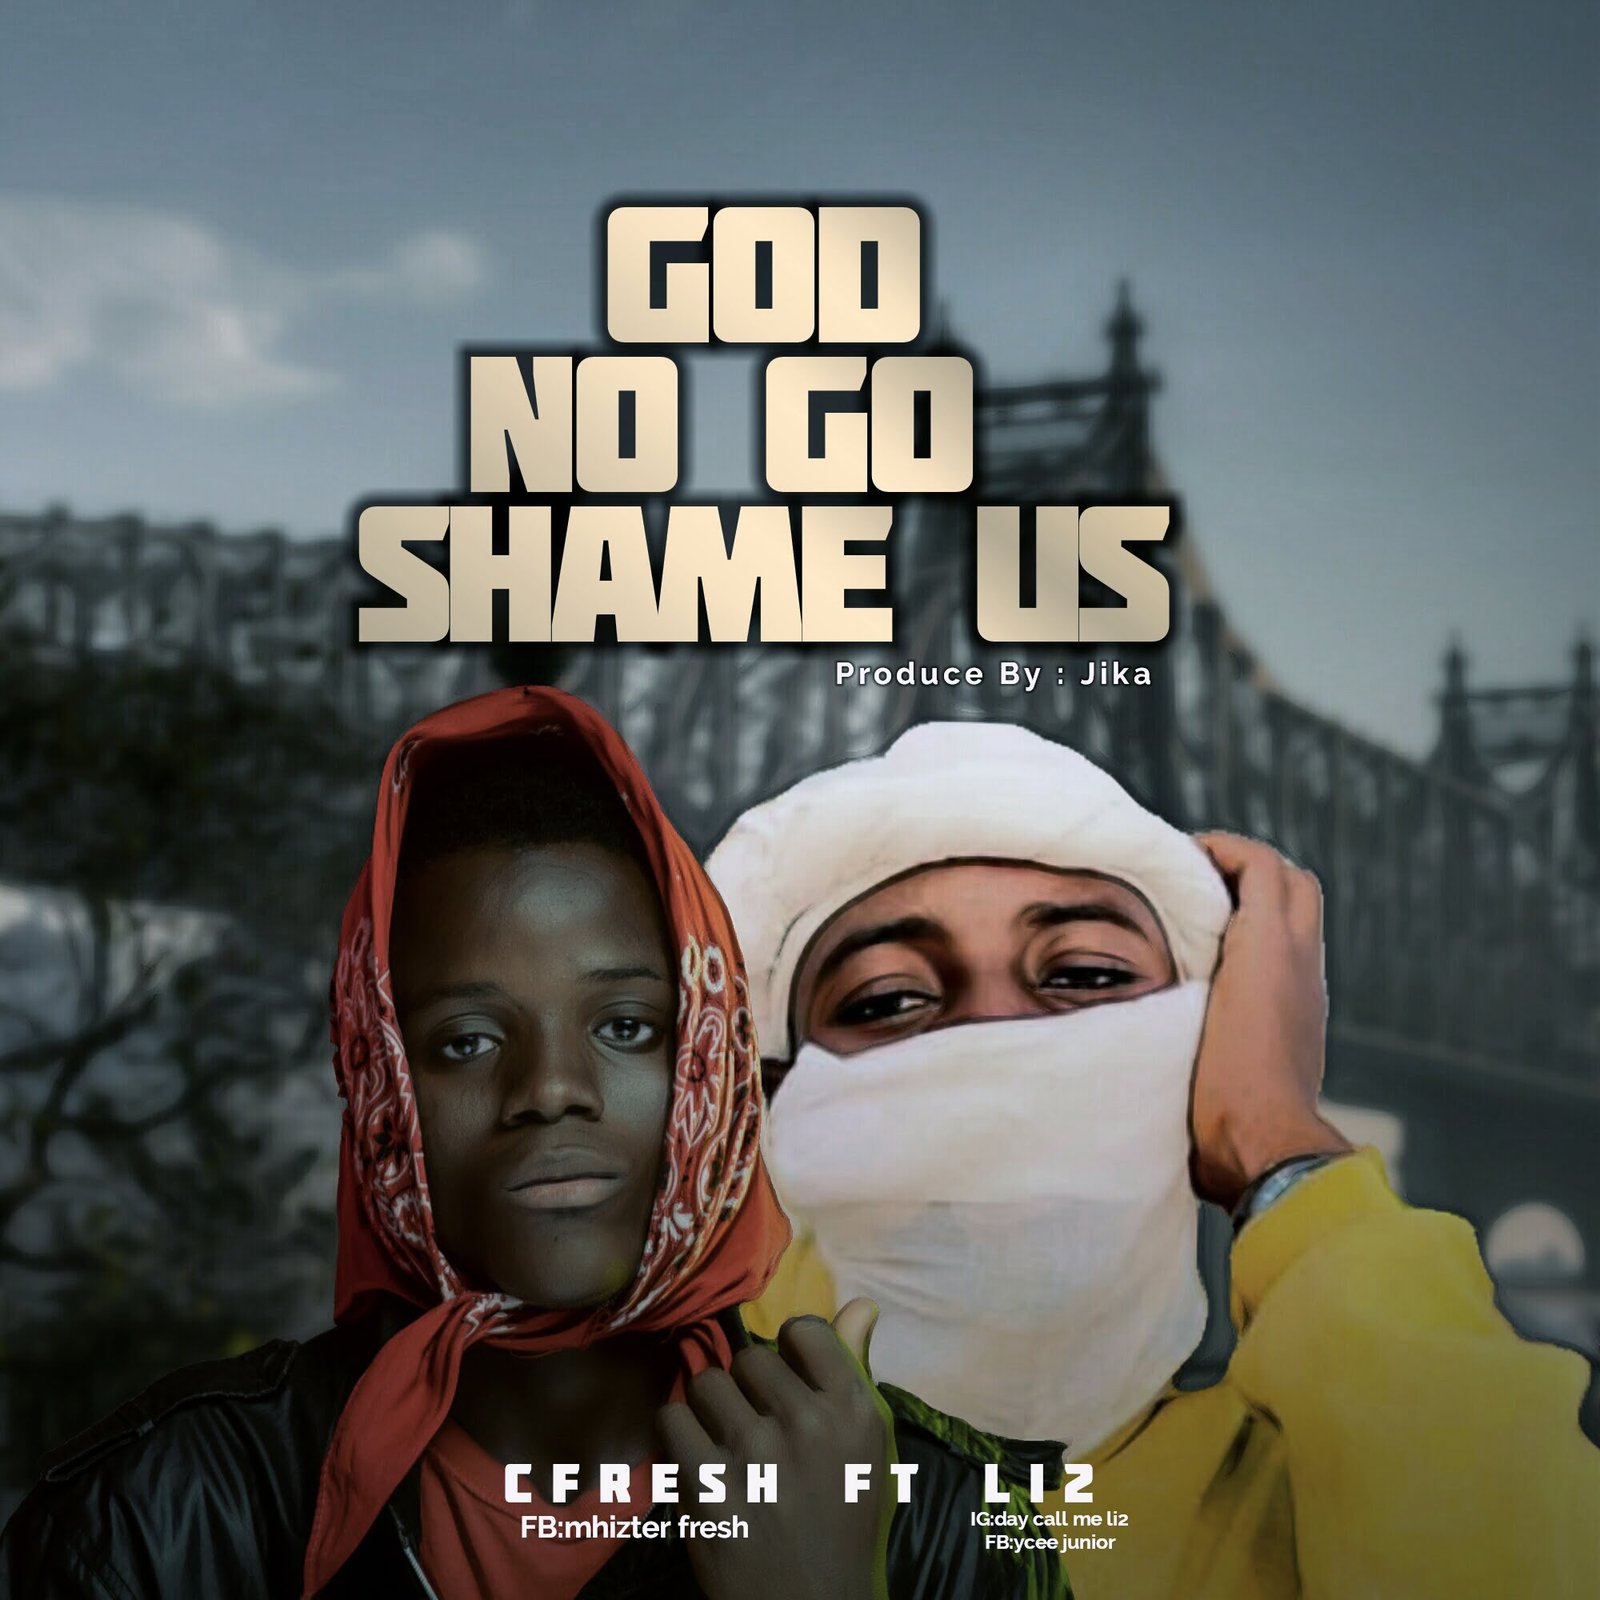 Li2 Ft. Cfresh - God No Go Shame Us [Mp3 Download]